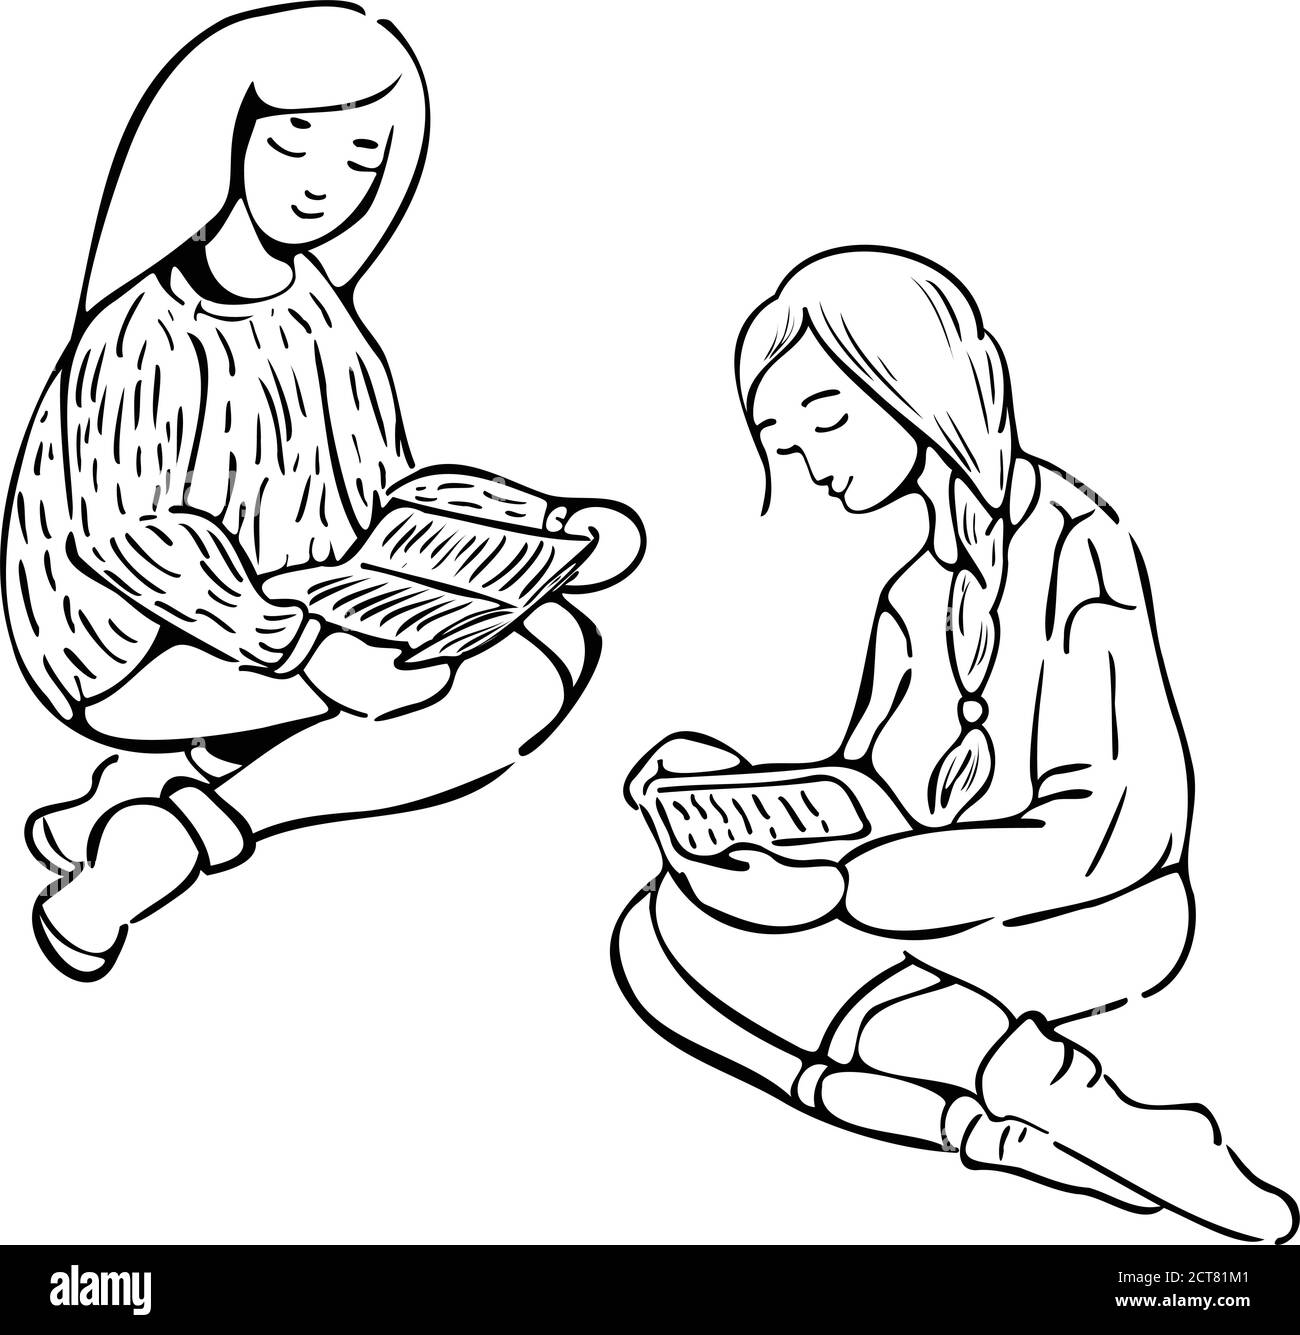 Zwei Mädchen, die Bücher lesen. Schwarz-Weiß-Vektor-Illustration von zwei weiblichen Zeichen lesen Papier und elektronische Bücher. Silhouette Abbildung in m Stock Vektor